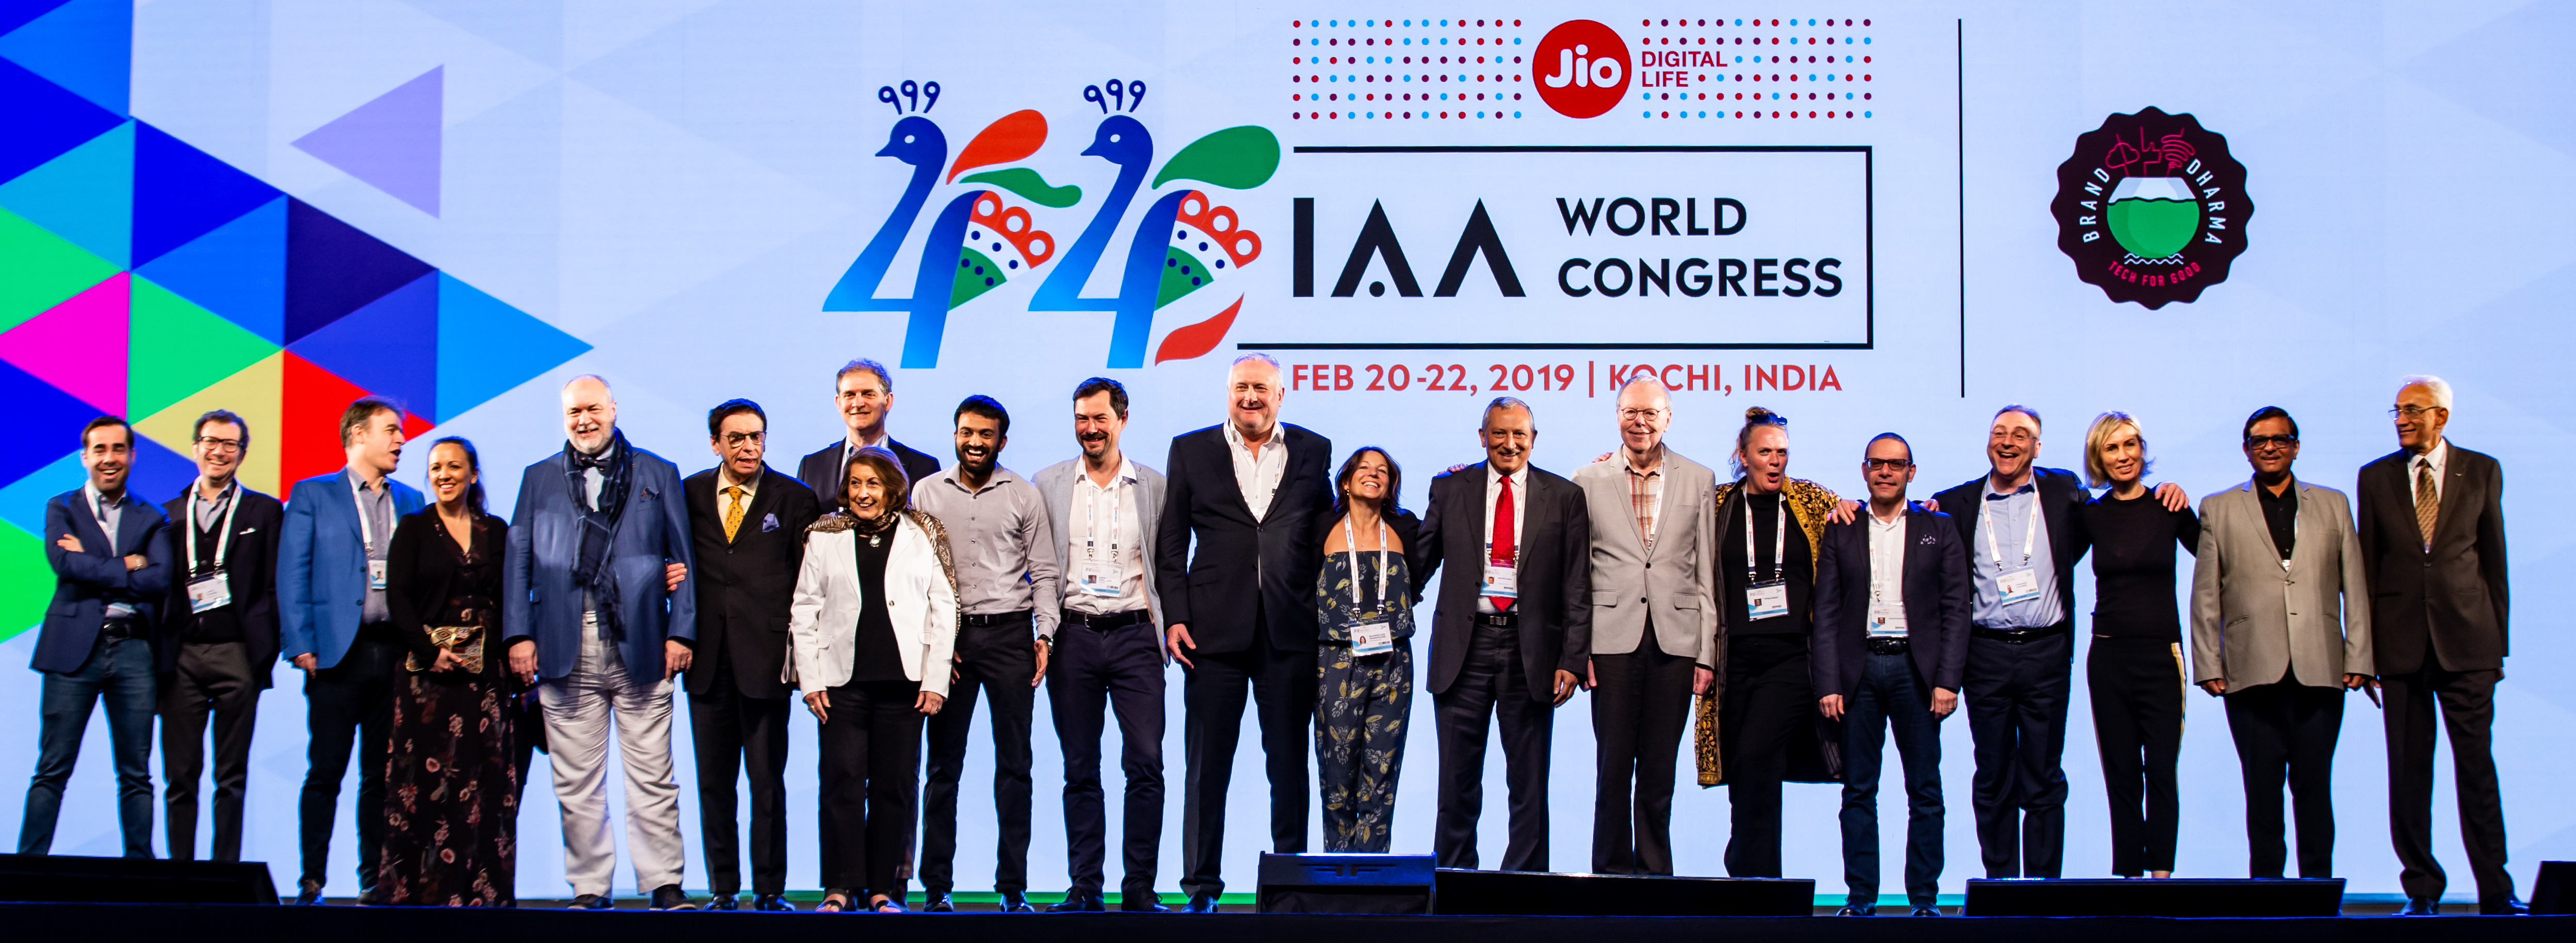 Światowy Kongres IAA w Kochi z udziałem delegacji z Polski